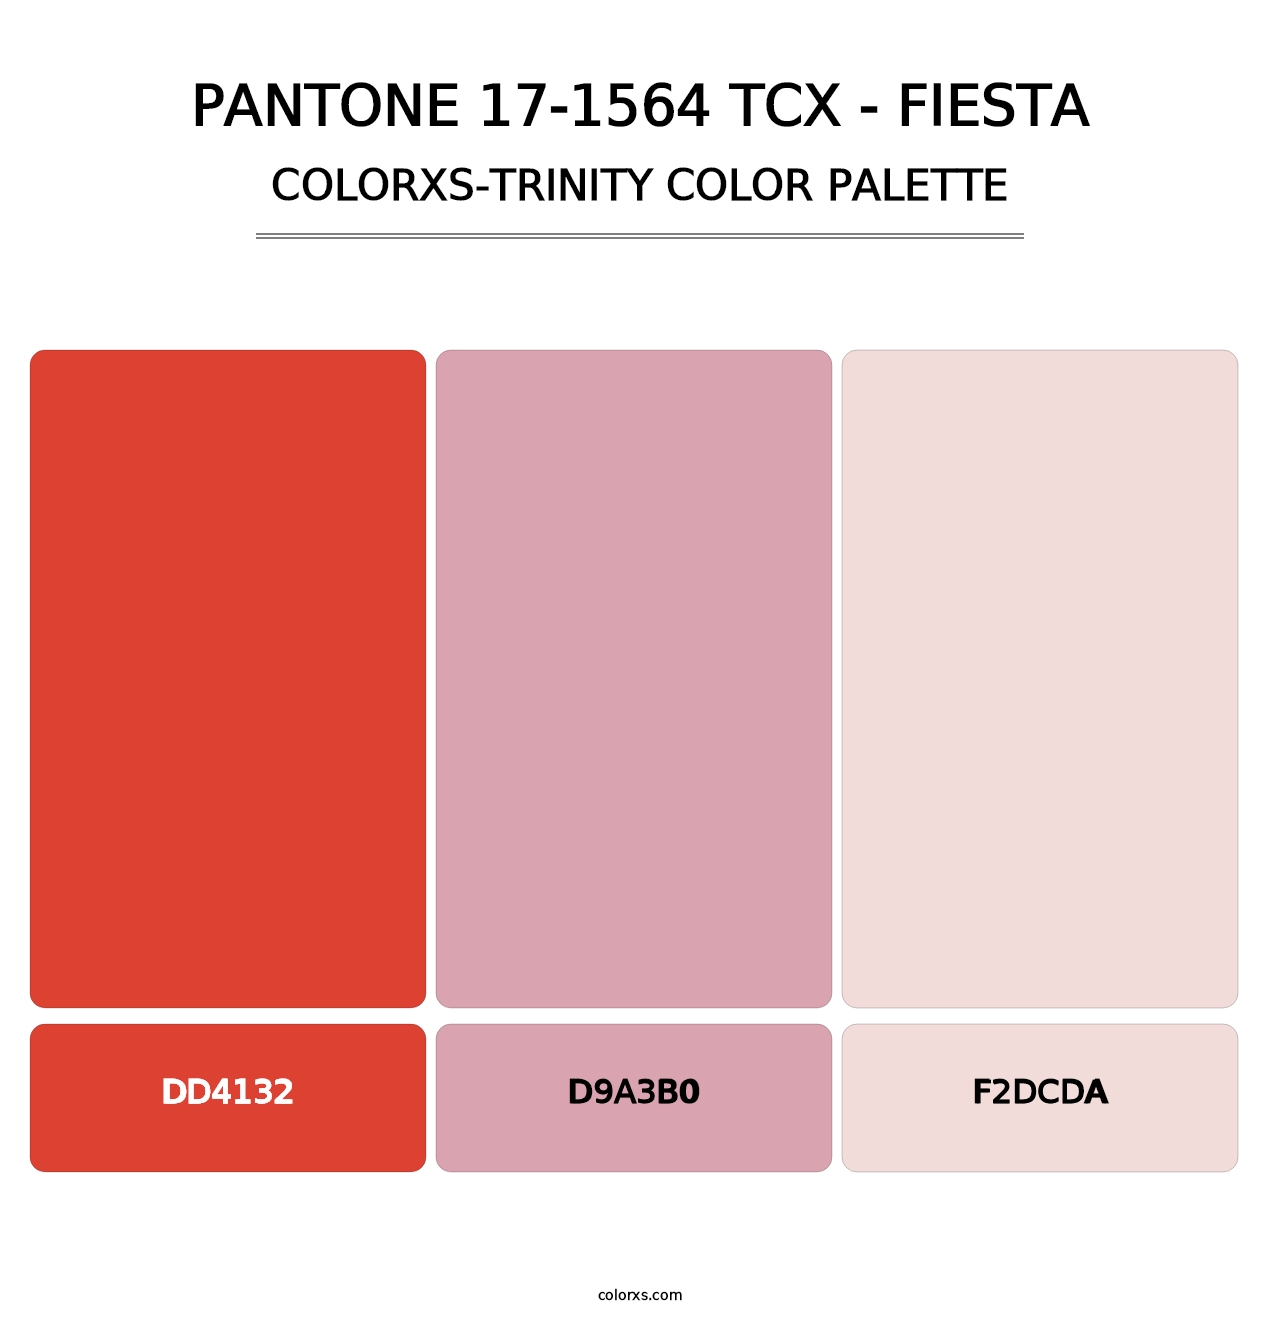 PANTONE 17-1564 TCX - Fiesta - Colorxs Trinity Palette